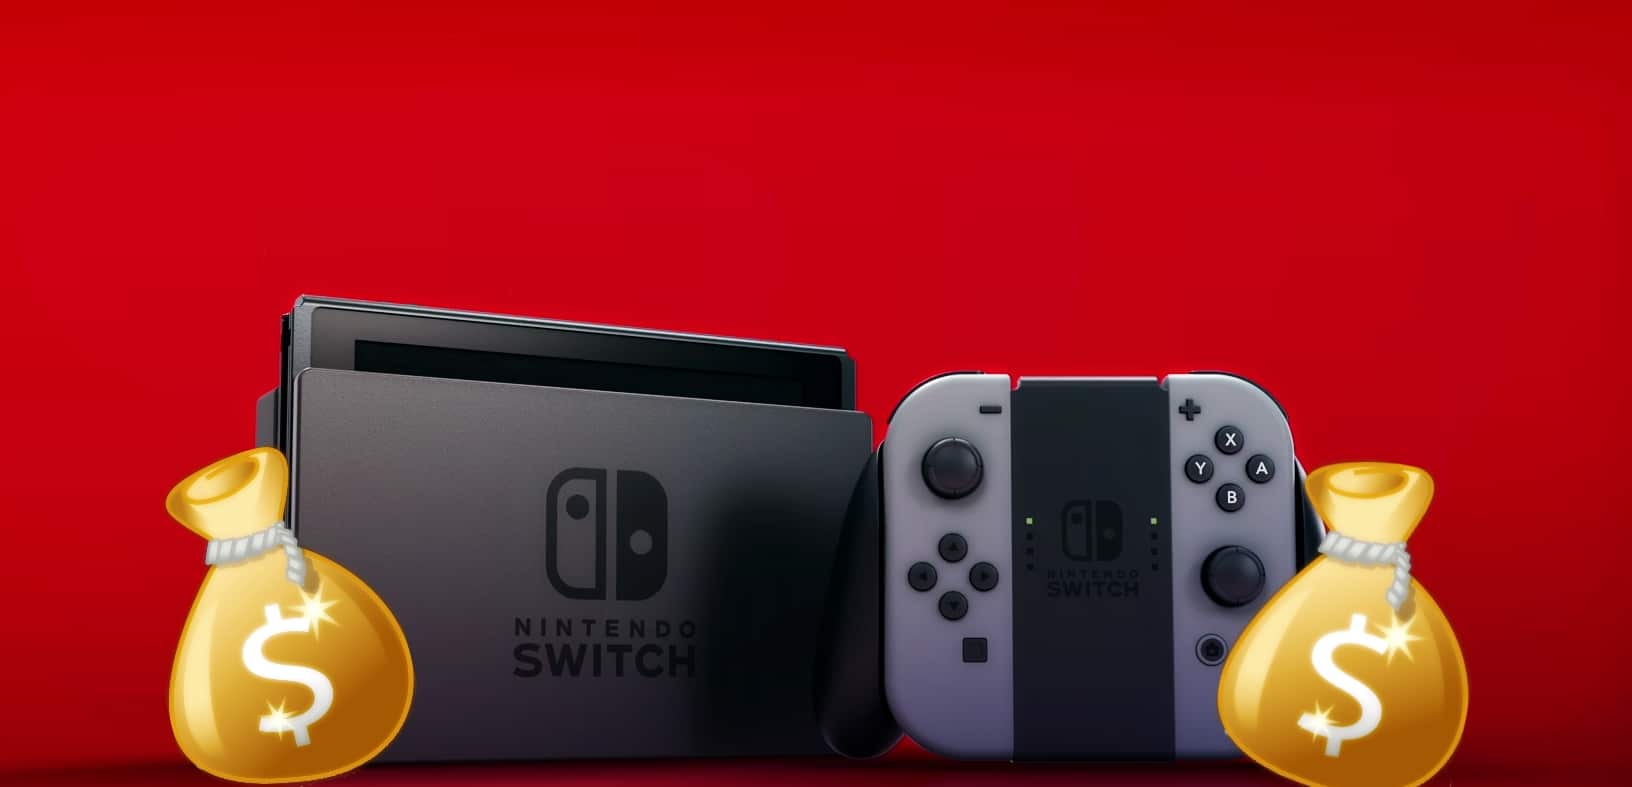 Nintendo Switch, la console più cercata per il black friday nel Regno Unito